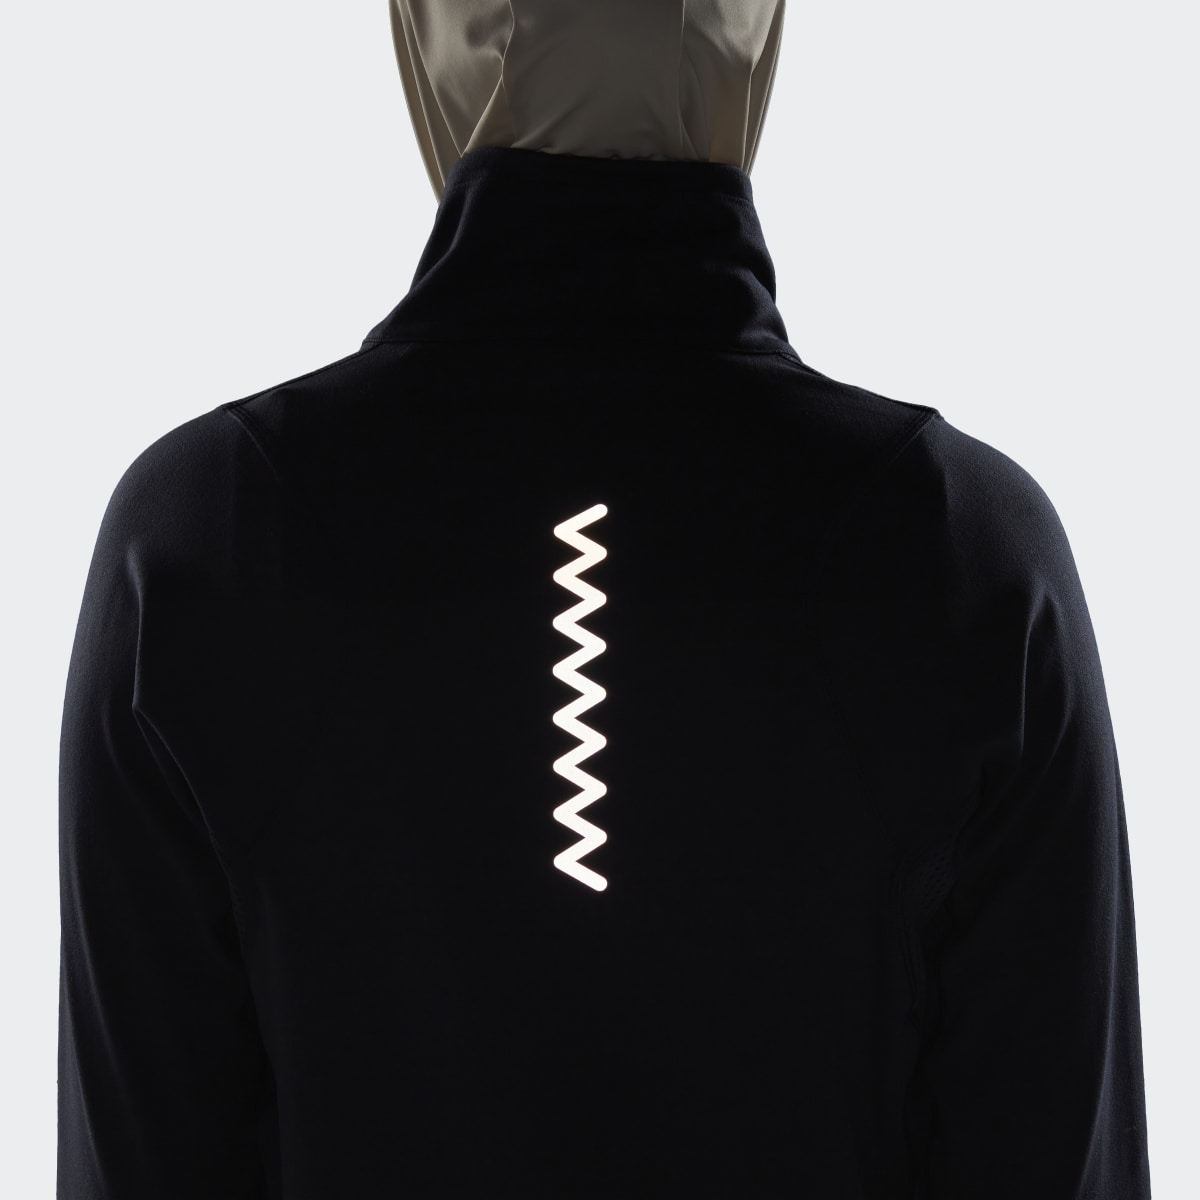 Adidas Run Fast Half-Zip Long Sleeve Sweatshirt. 8